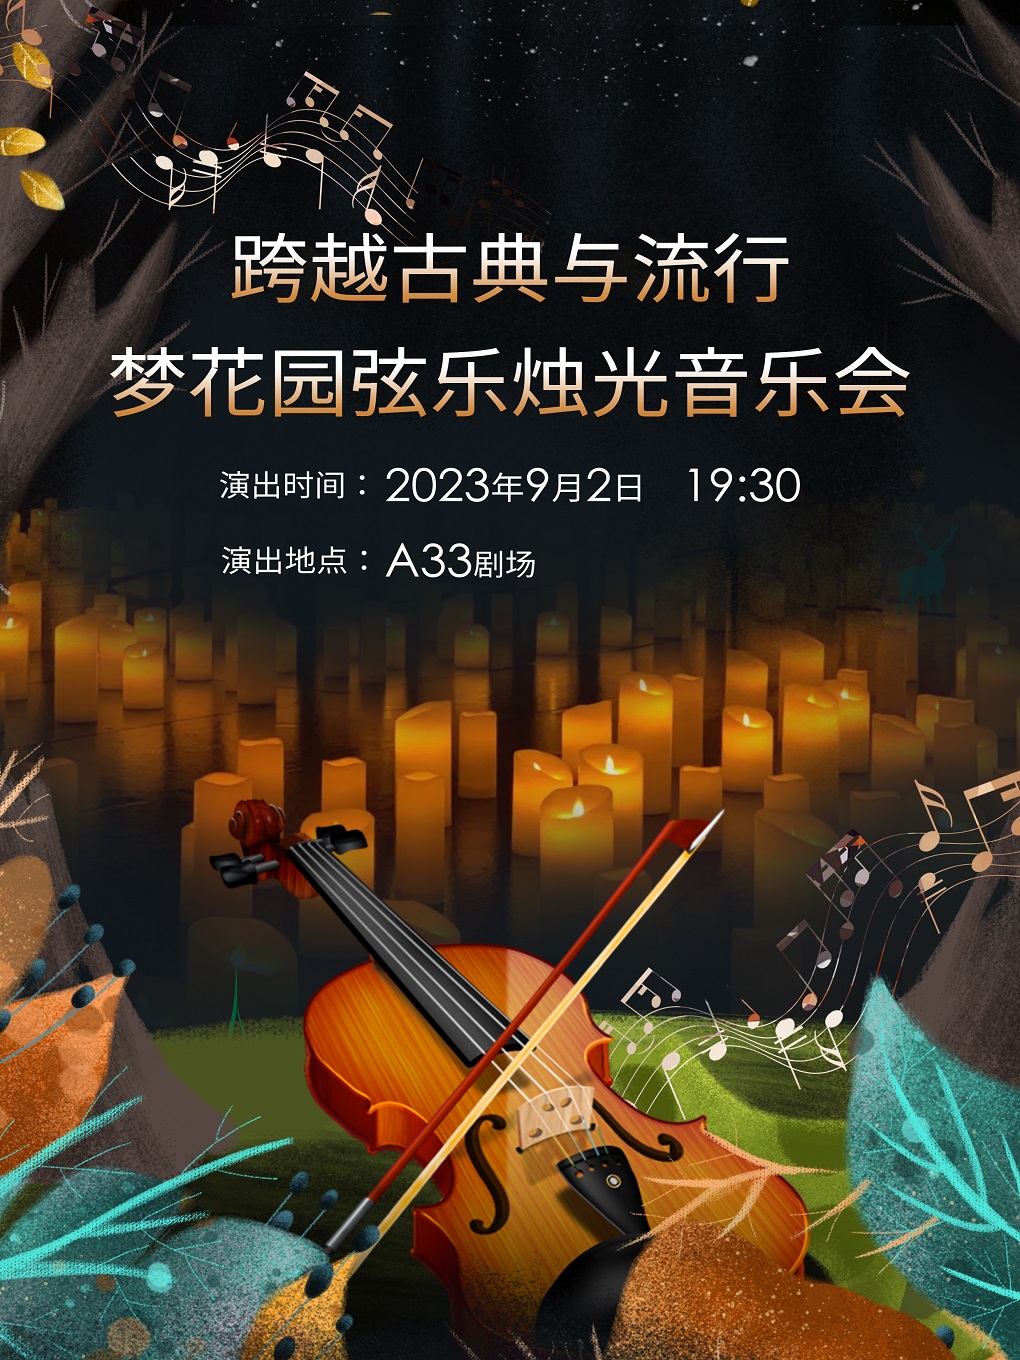 北京梦花园弦乐烛光音乐会